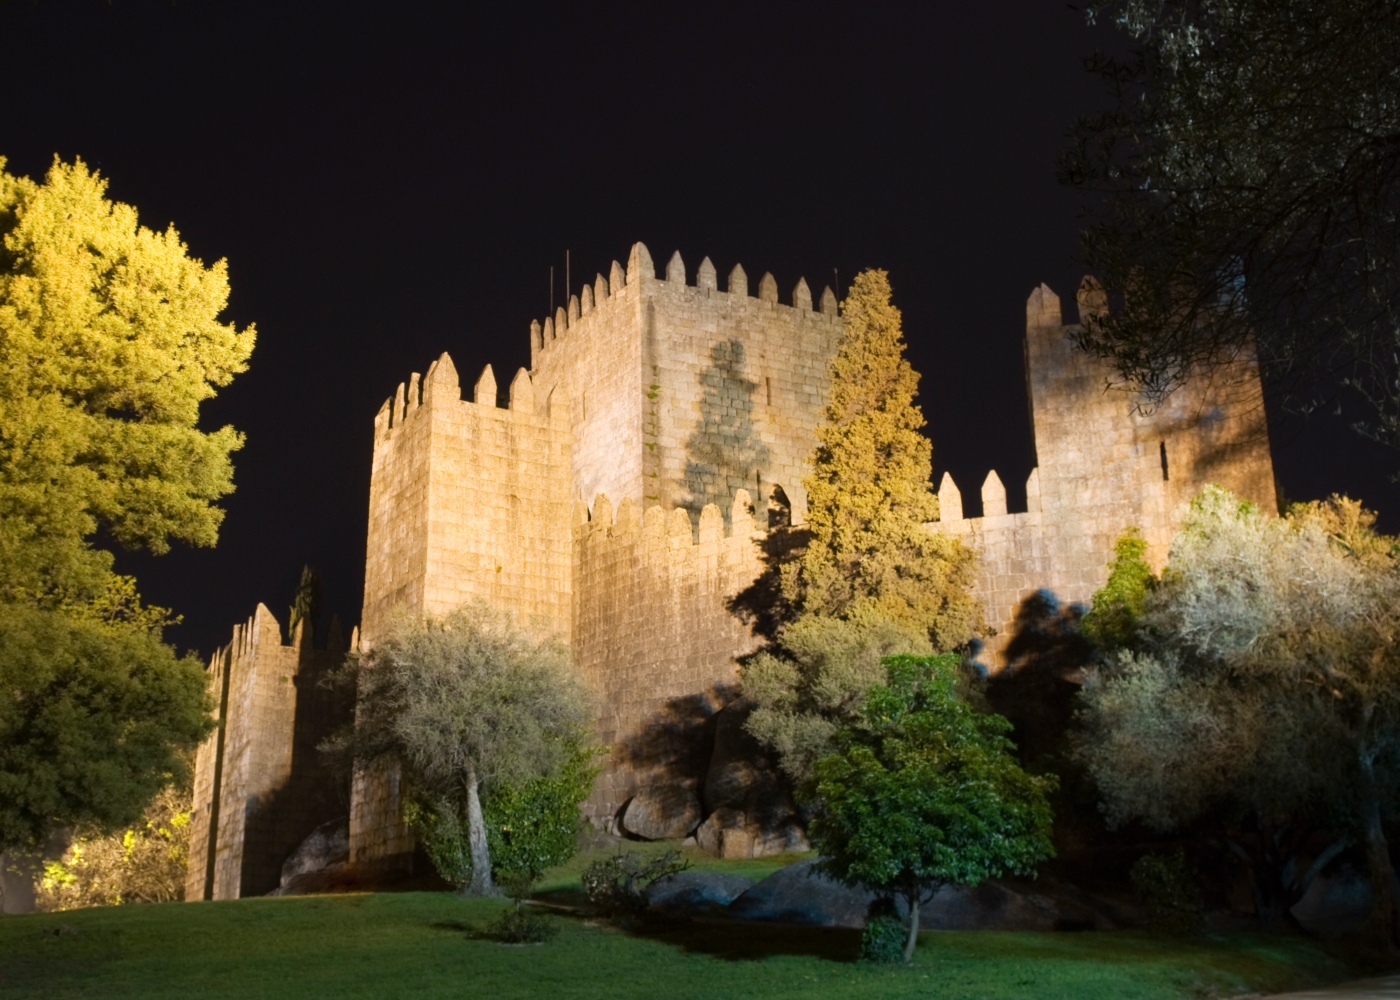 Cinema drive-in-em Guimarães: fotografia do Castelo da cidade